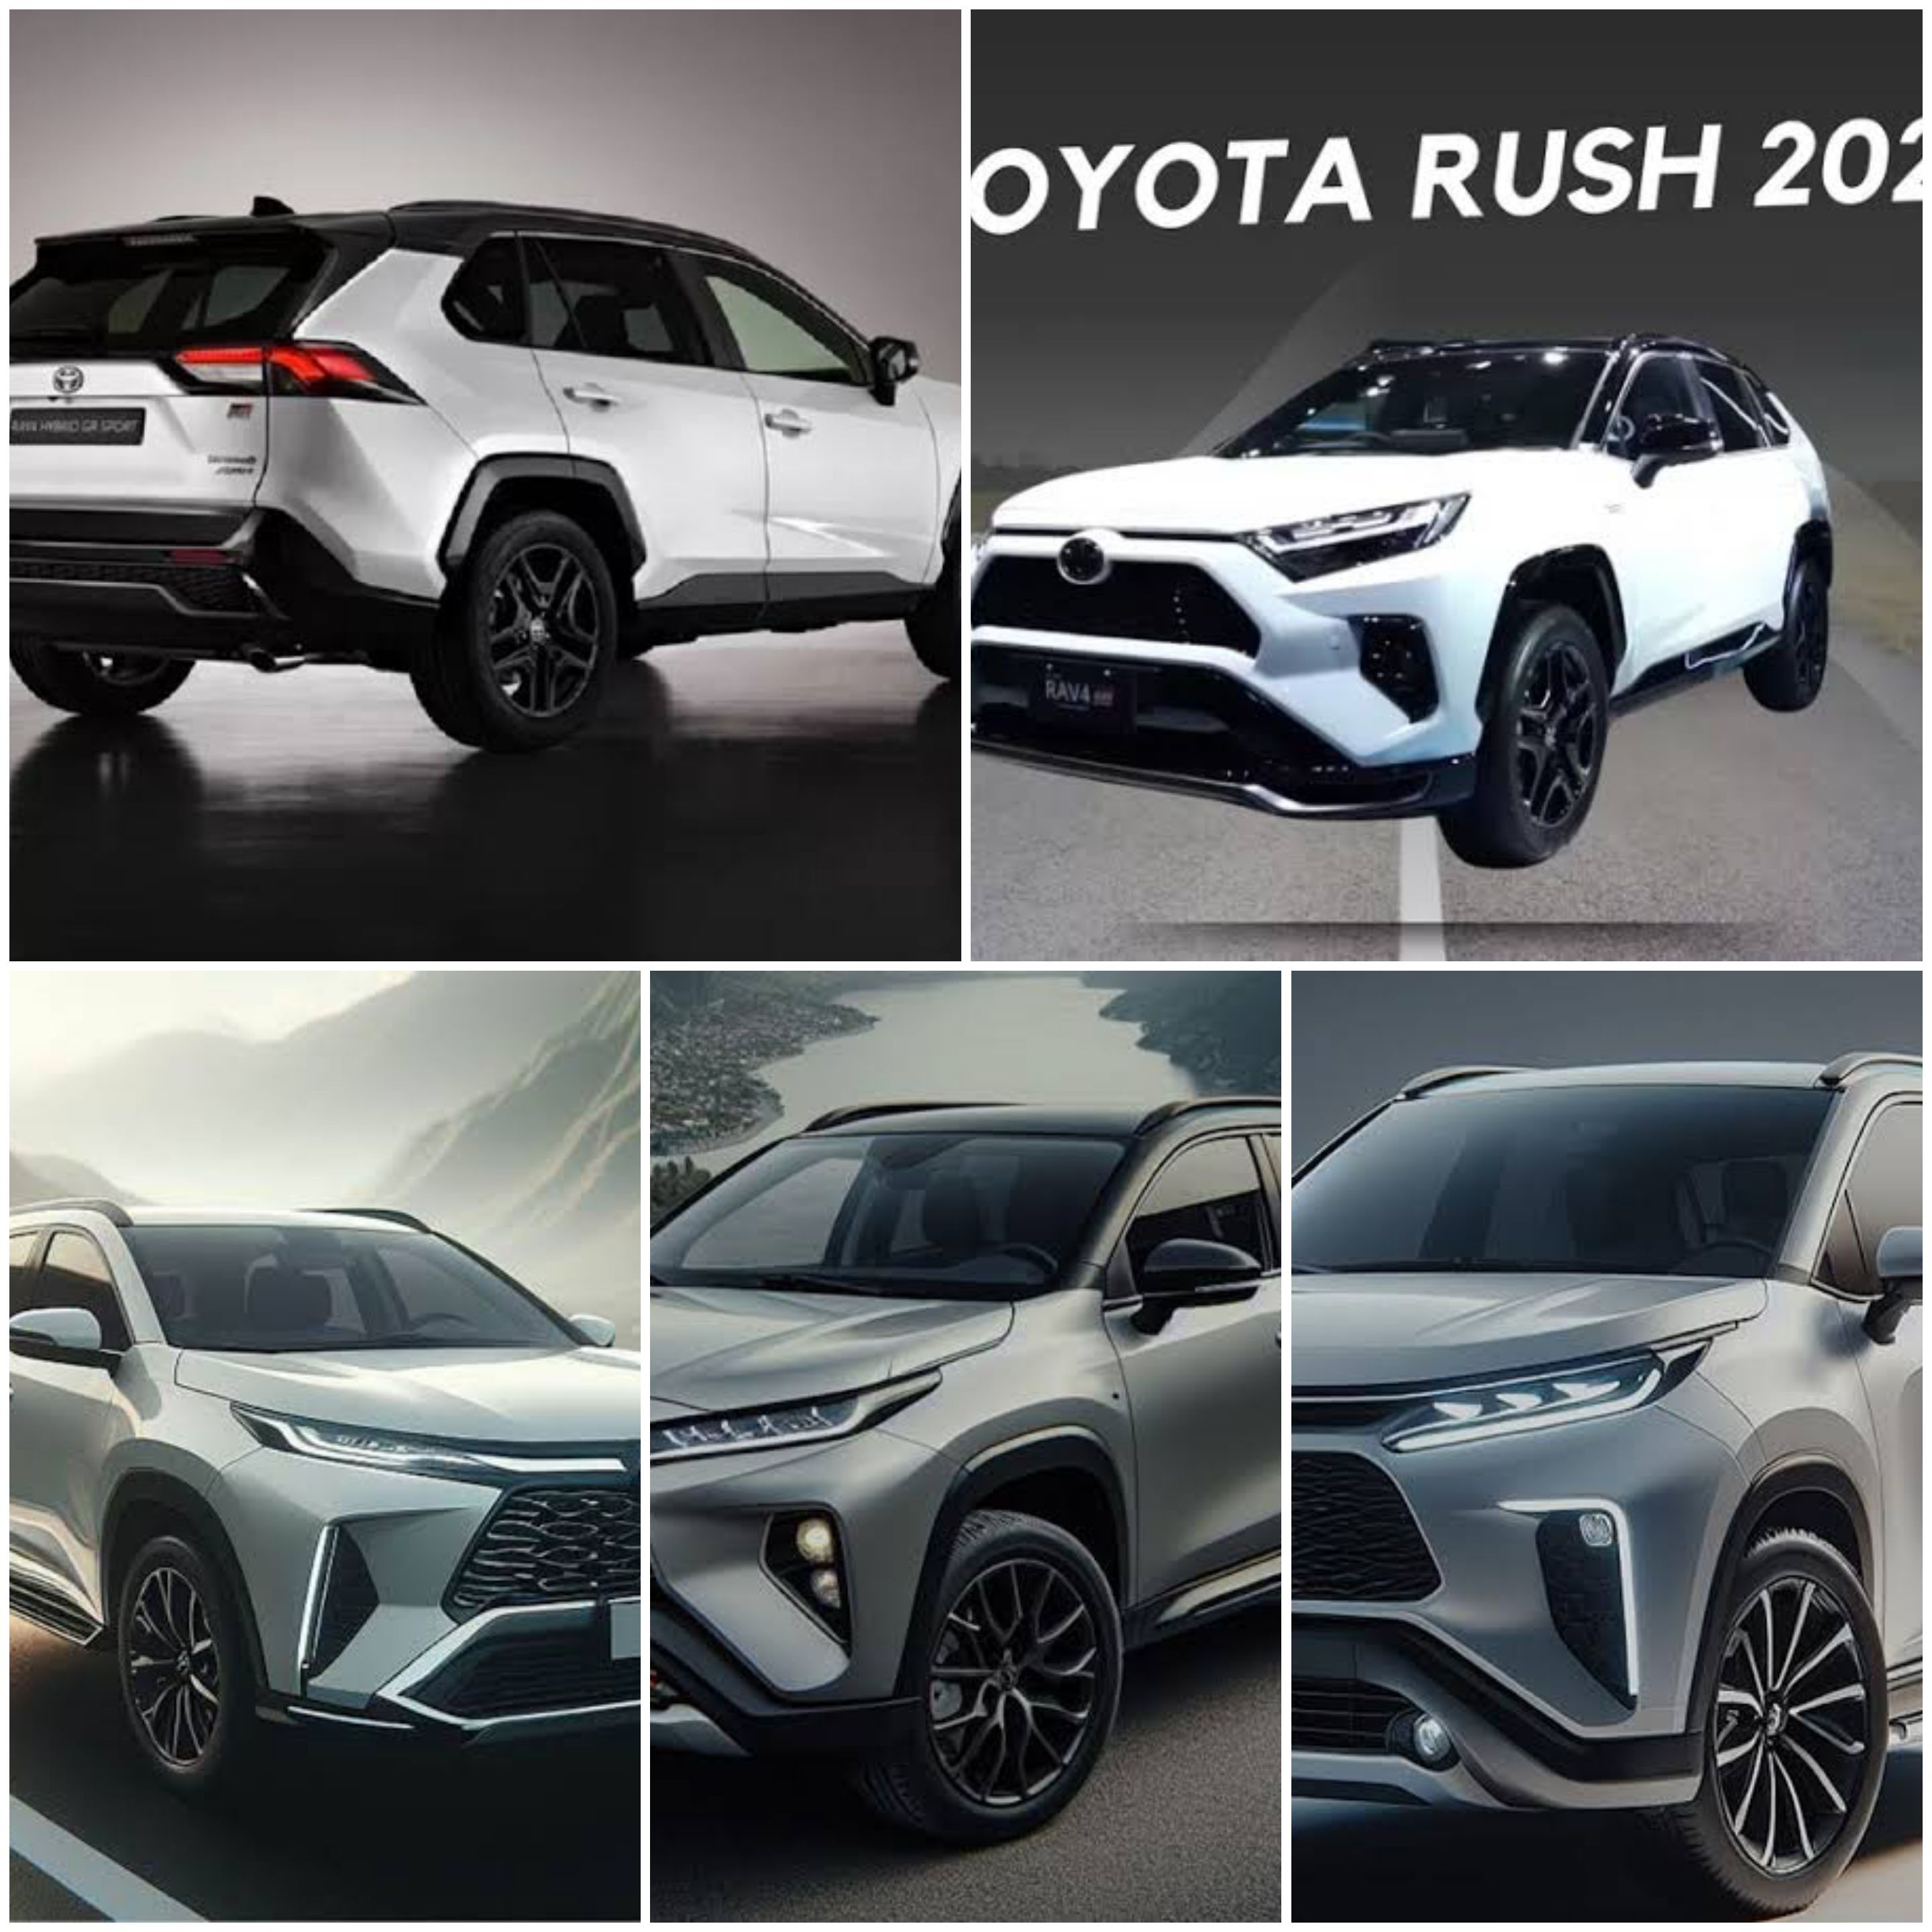 Desain Terbaru, Kinerja Terbaik! Toyota Rush 2024 Siap Rilis, Ini Penjelasan Lengkapnya!